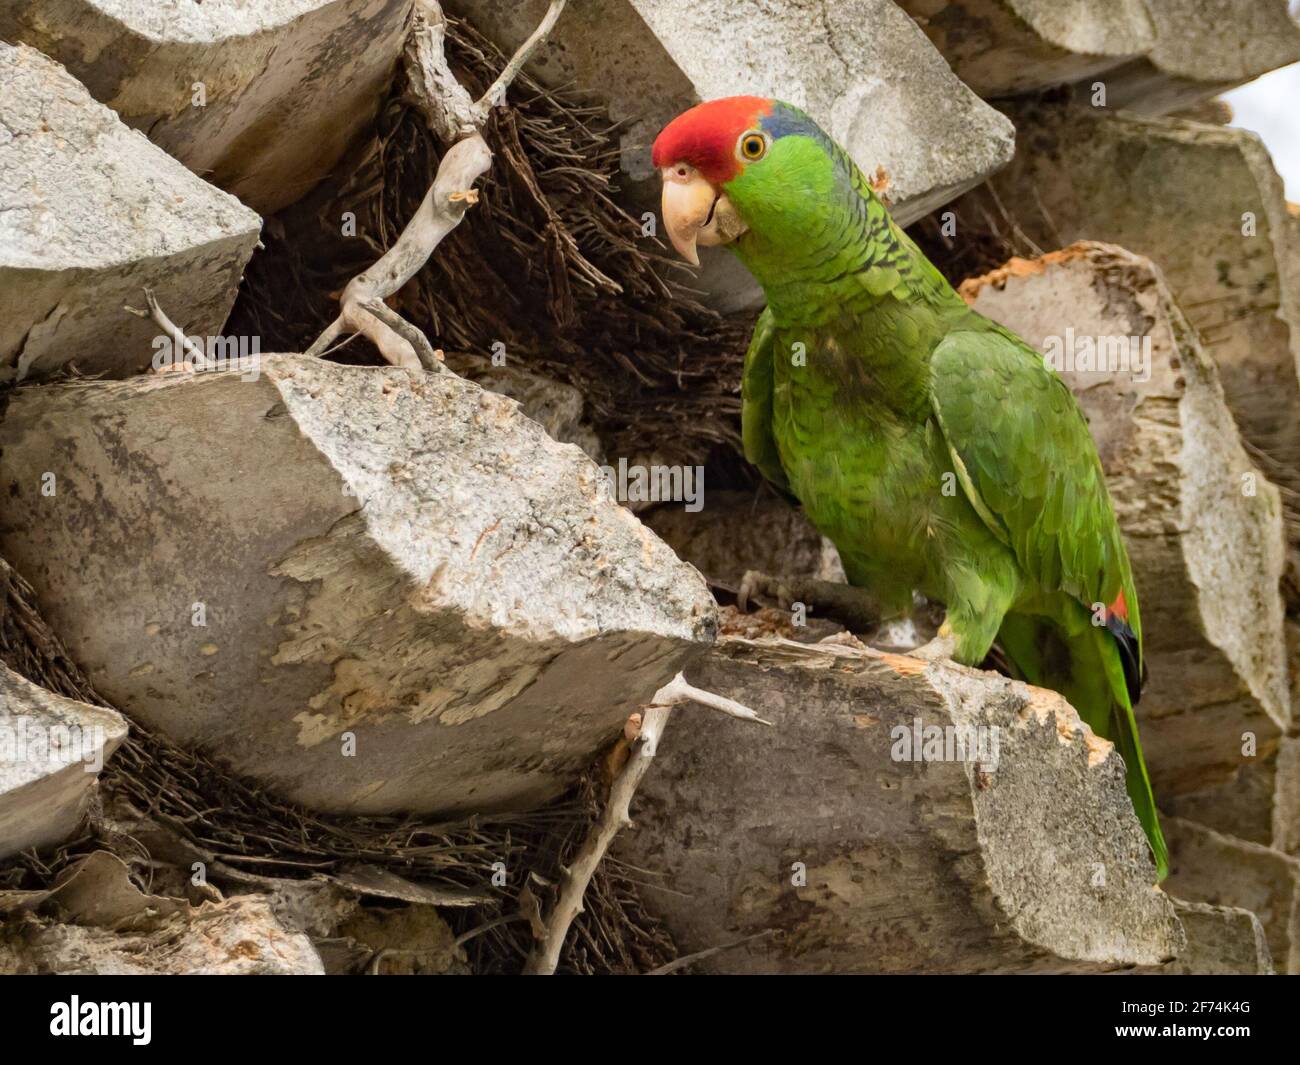 Perroquet à couronne rouge, Amazona viridigenalis, un perroquet amazona exotique établi à San Diego, Californie, États-Unis Banque D'Images